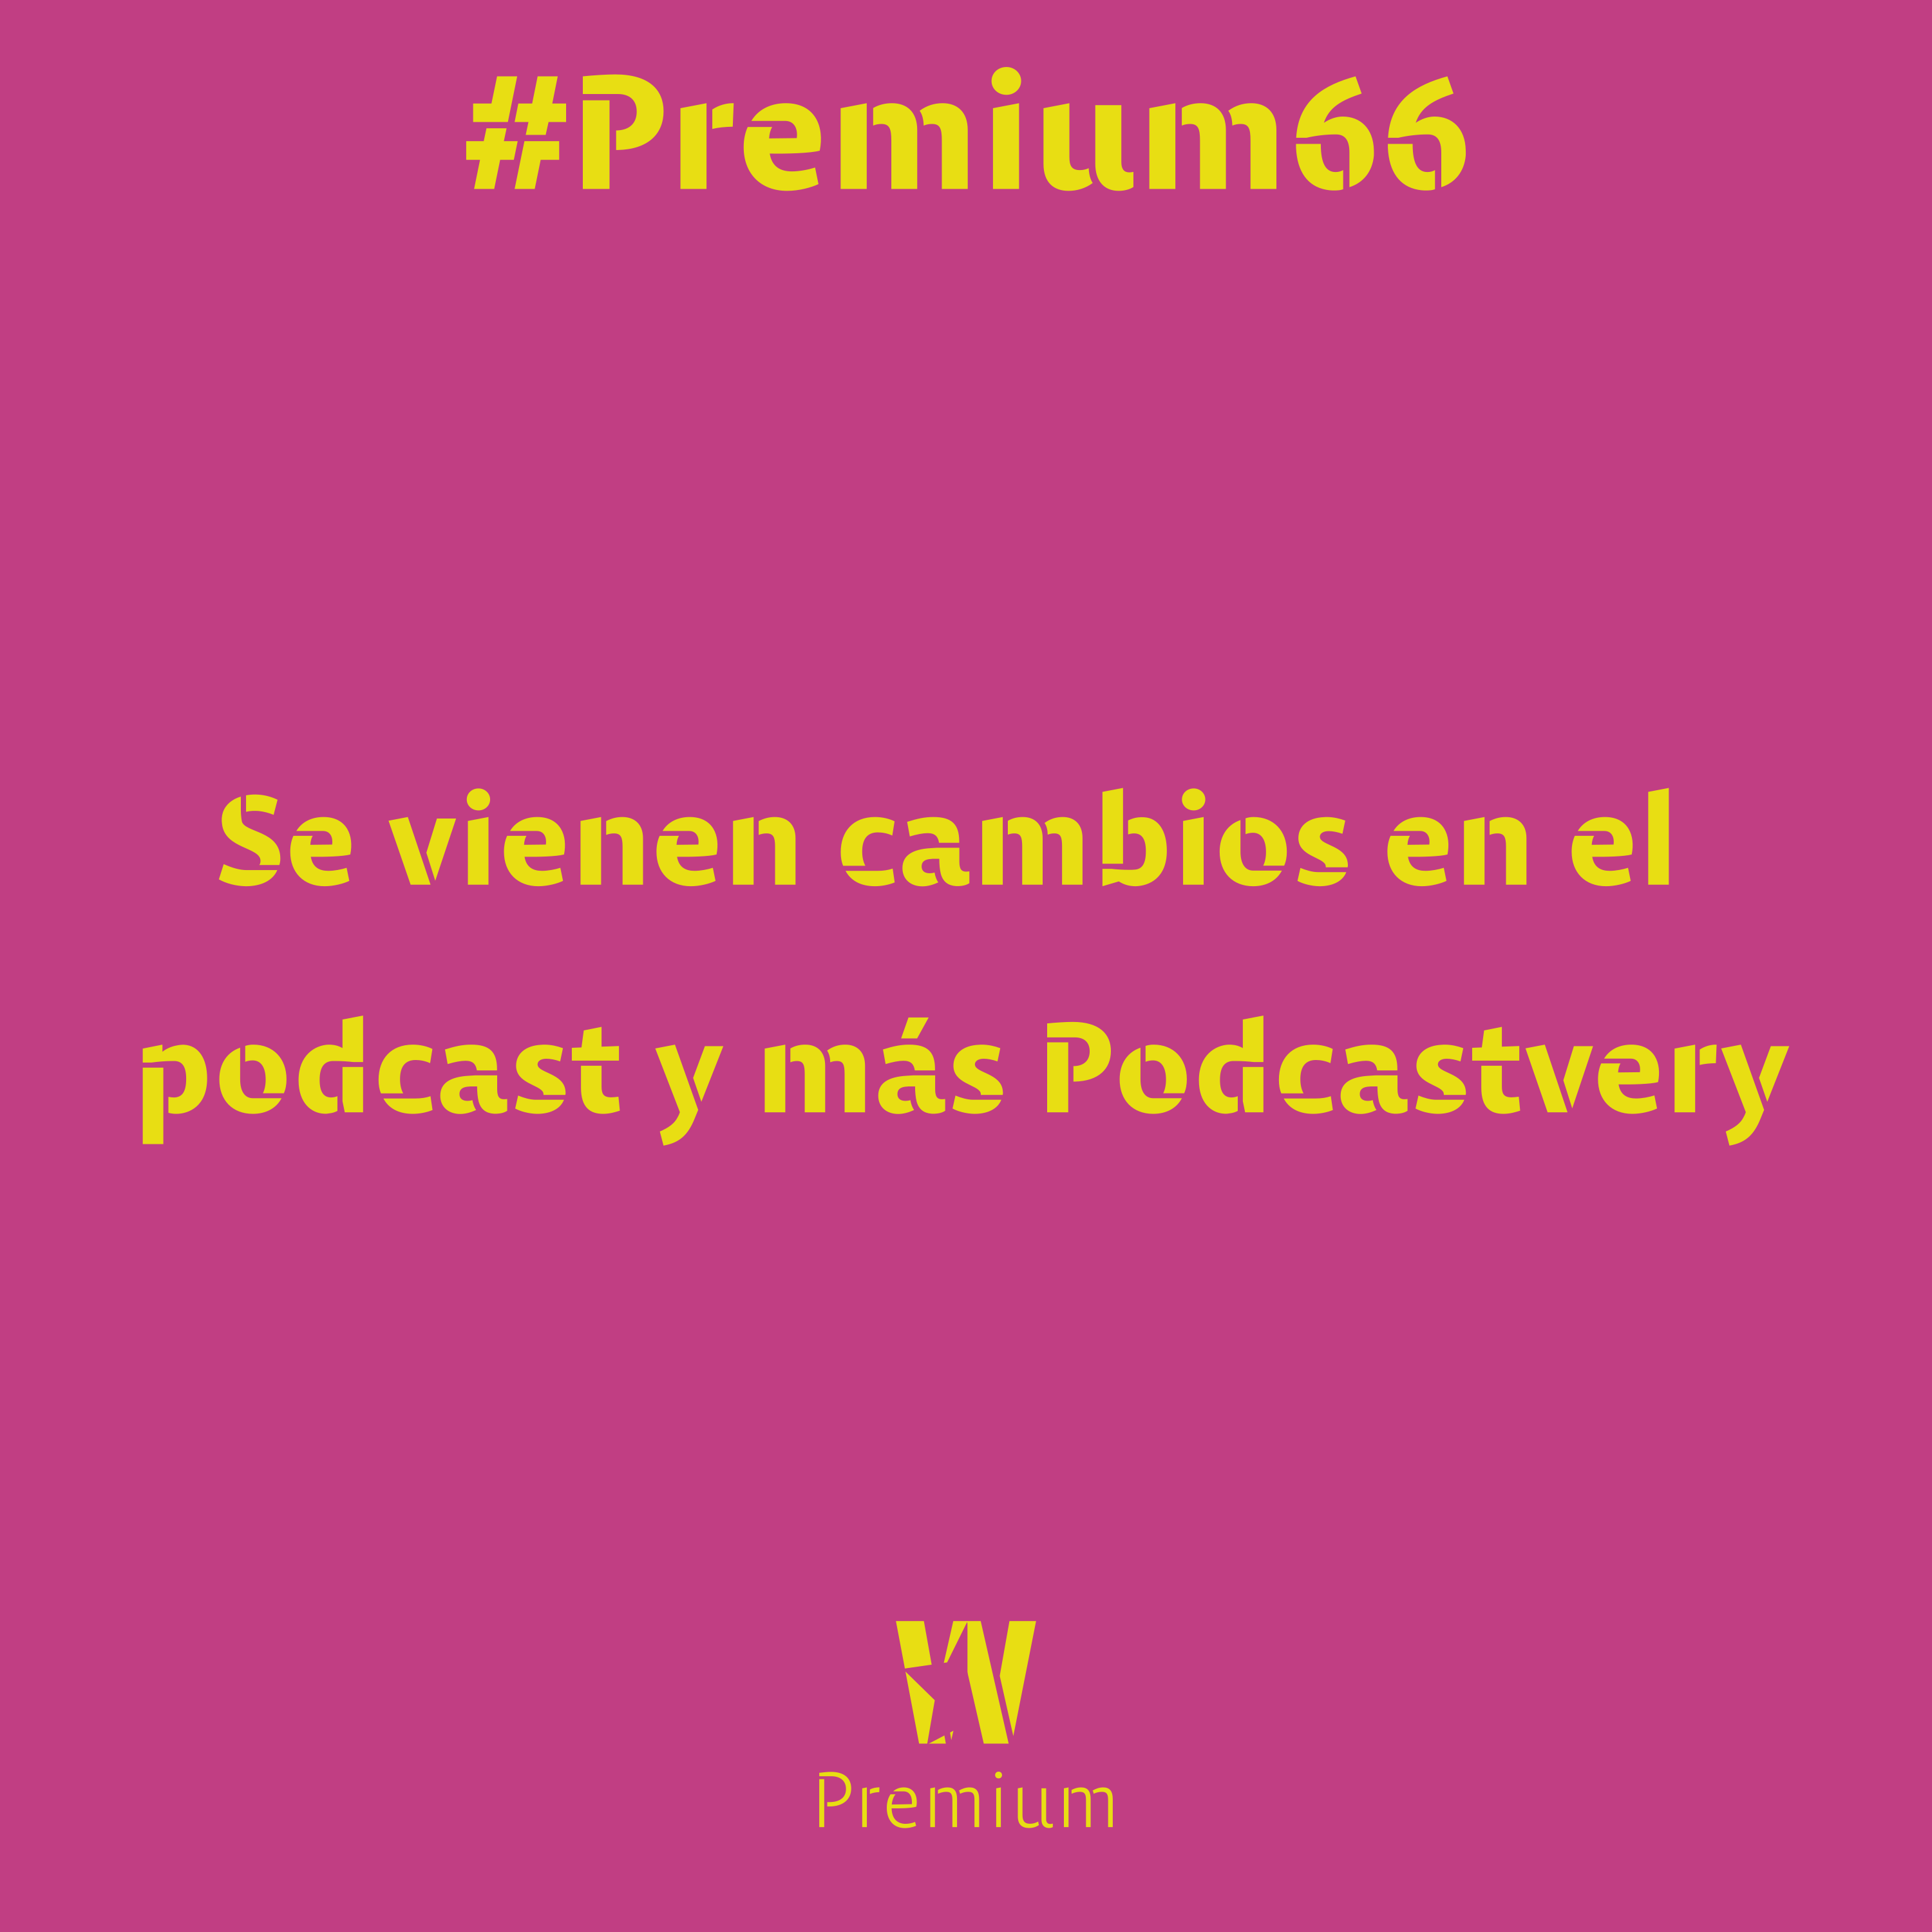 #Premium66 - Se vienen cambios en el podcast y más Podcastvery